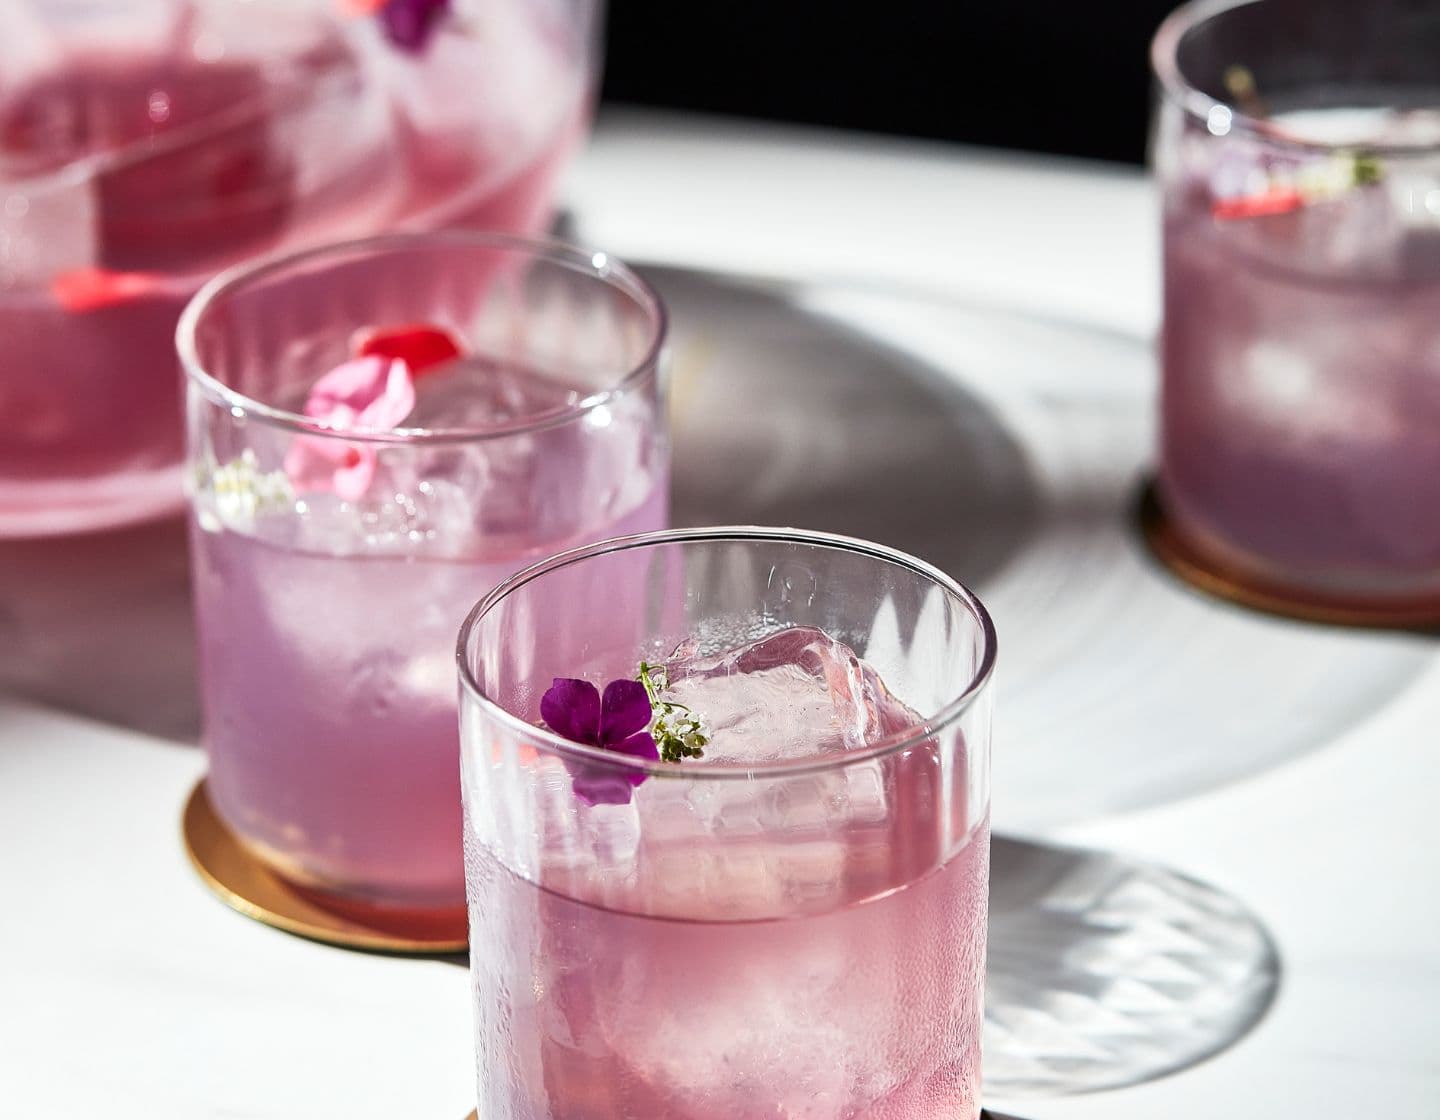 Purple cocktail serve with flower garnish